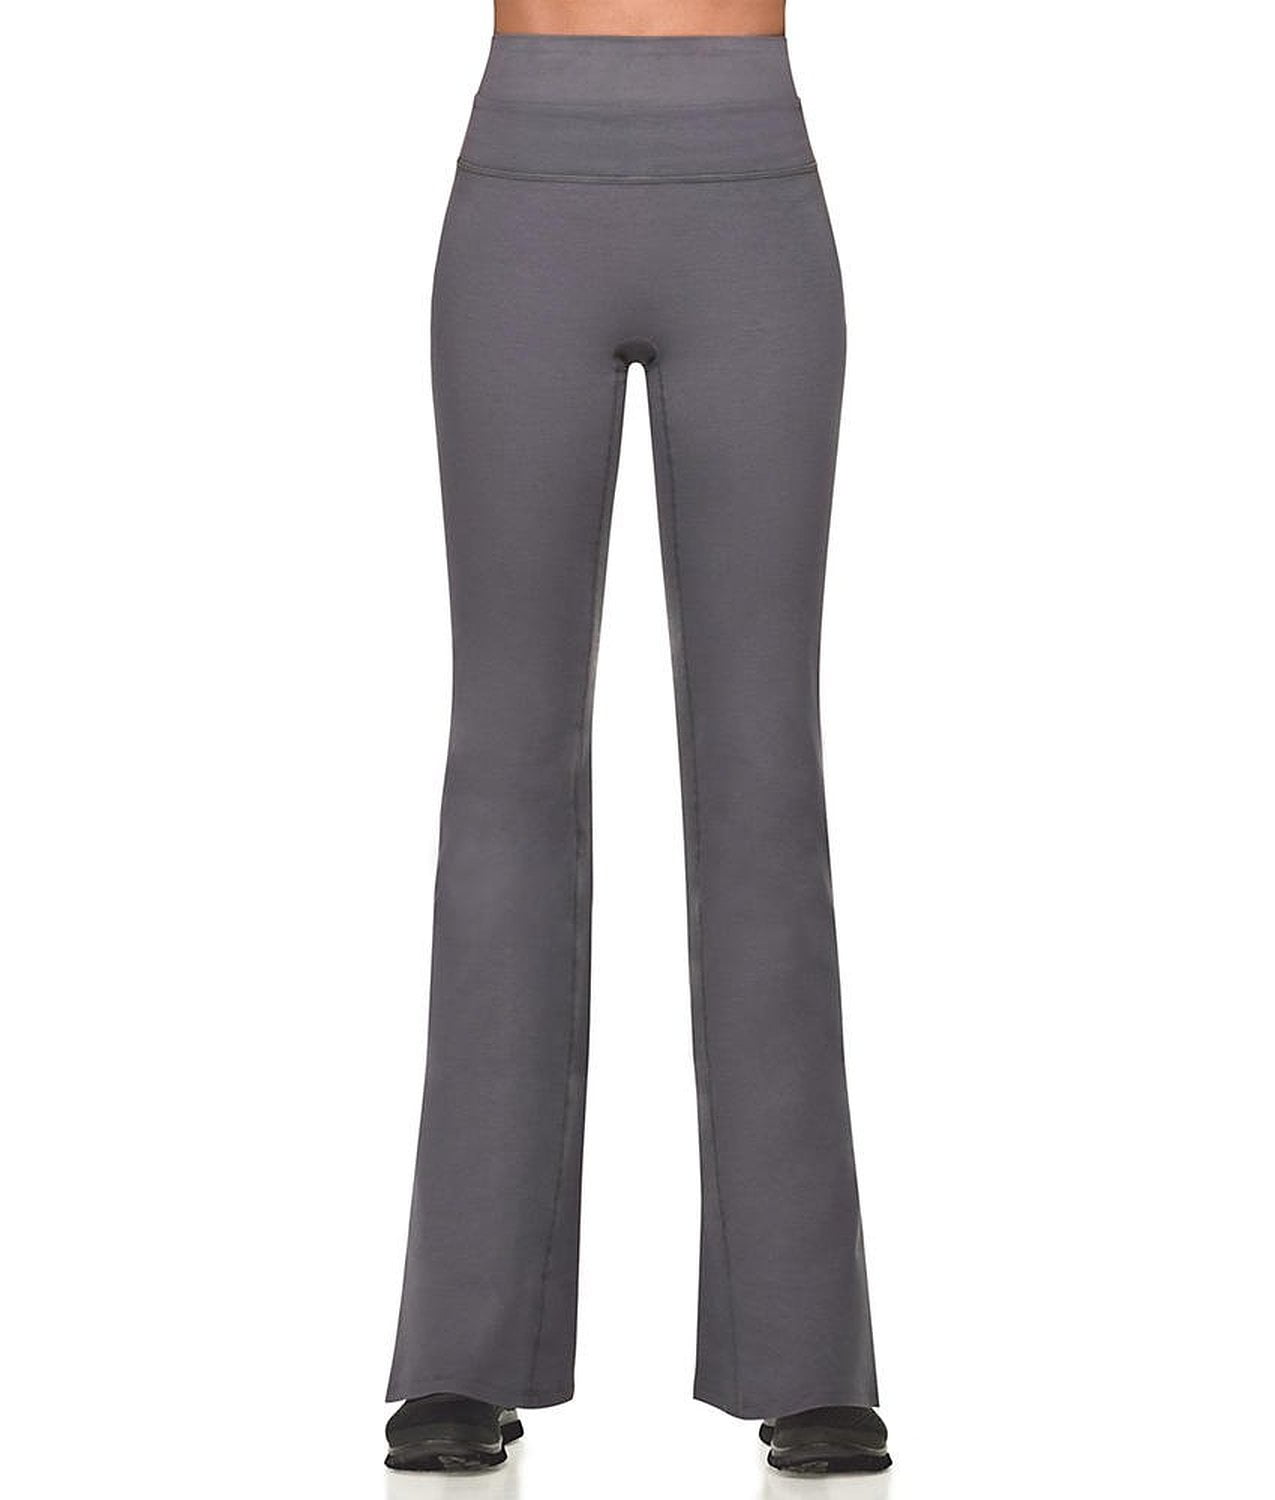 Spanx Active Women's Plus Size Power Pant Black Pants - Walmart.com